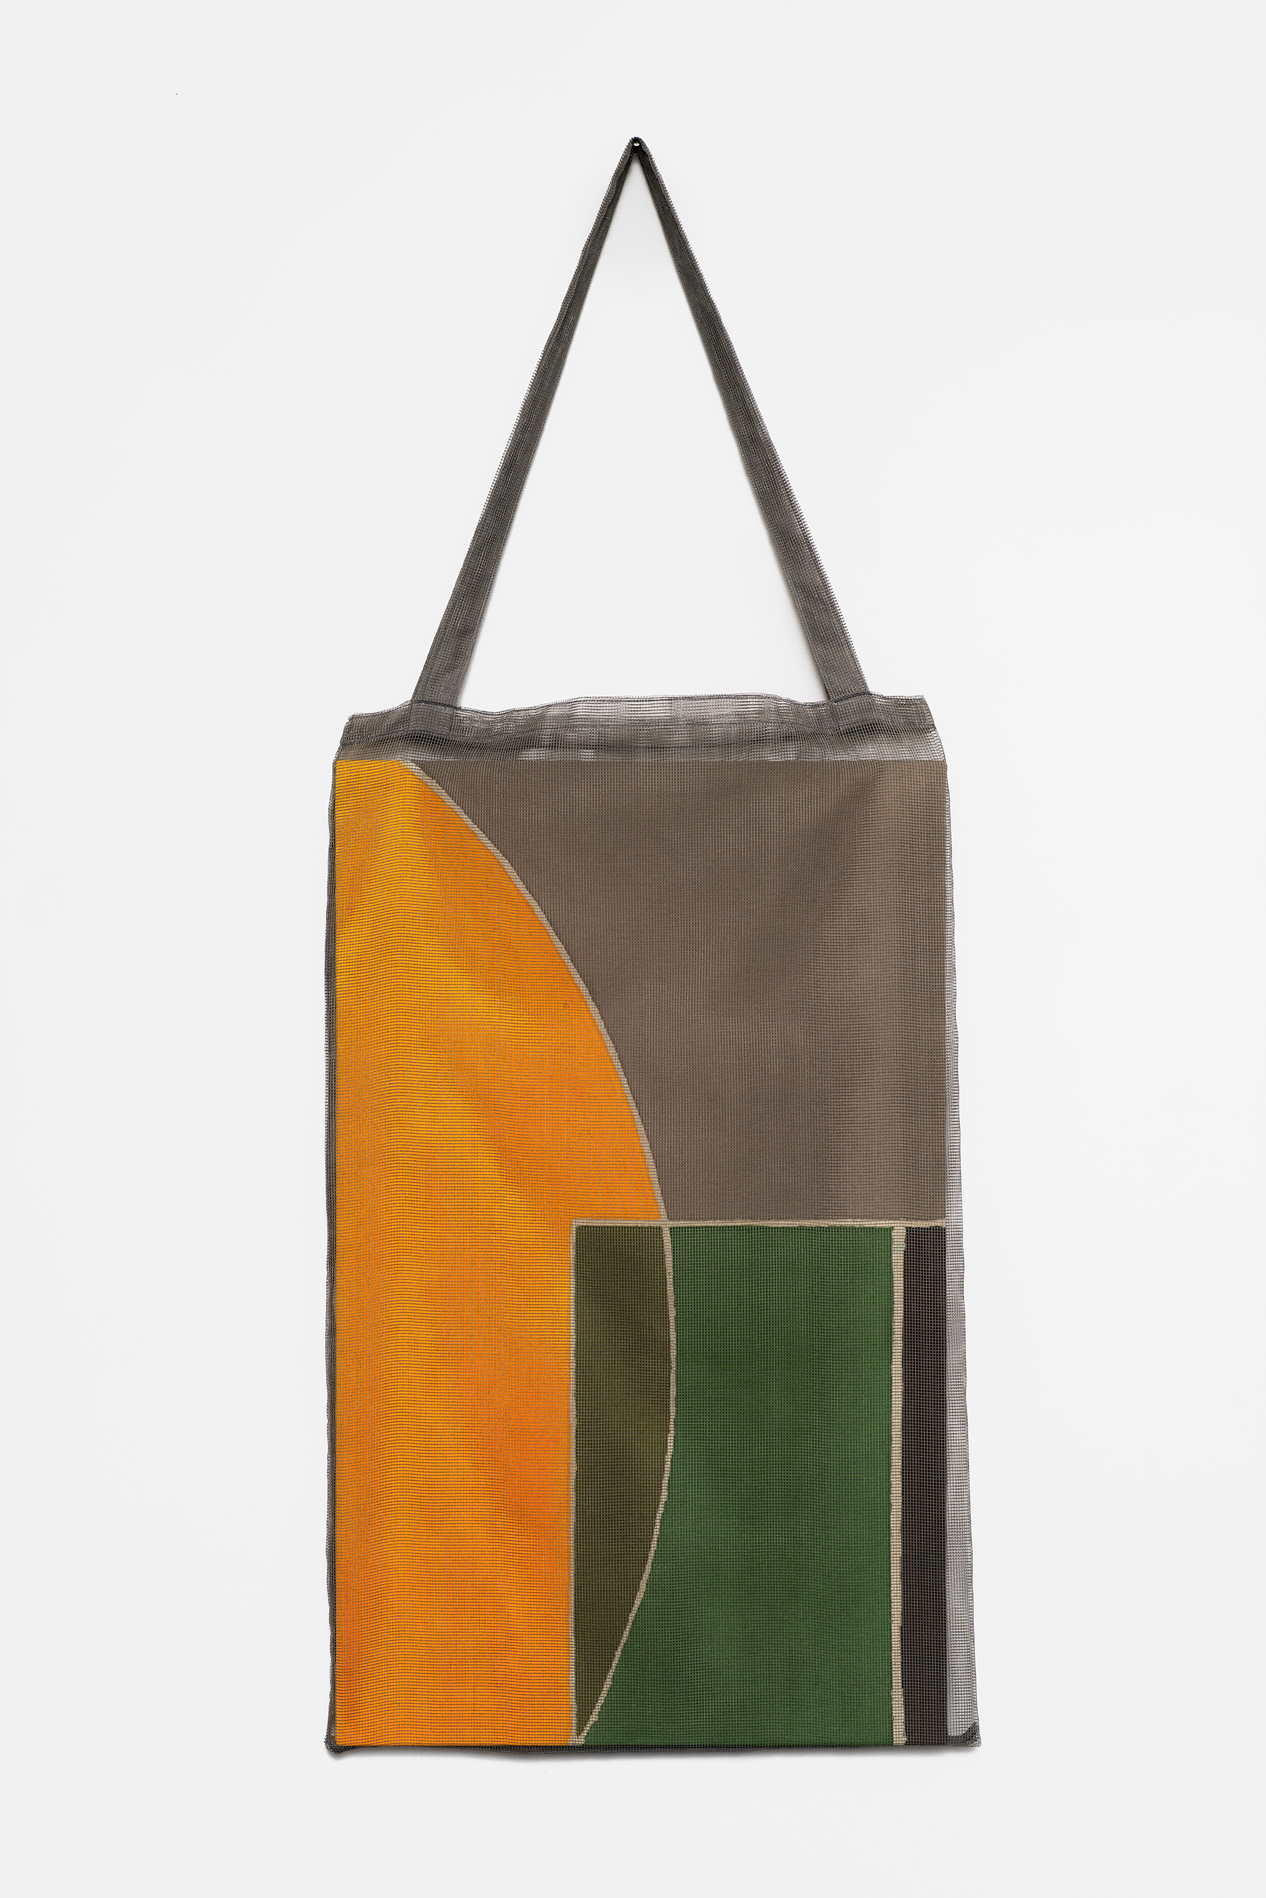 , 2019, pigment on cotton(batik) and bag, 120 x 47 x 3 cm, , Photo: Aurélien Mole